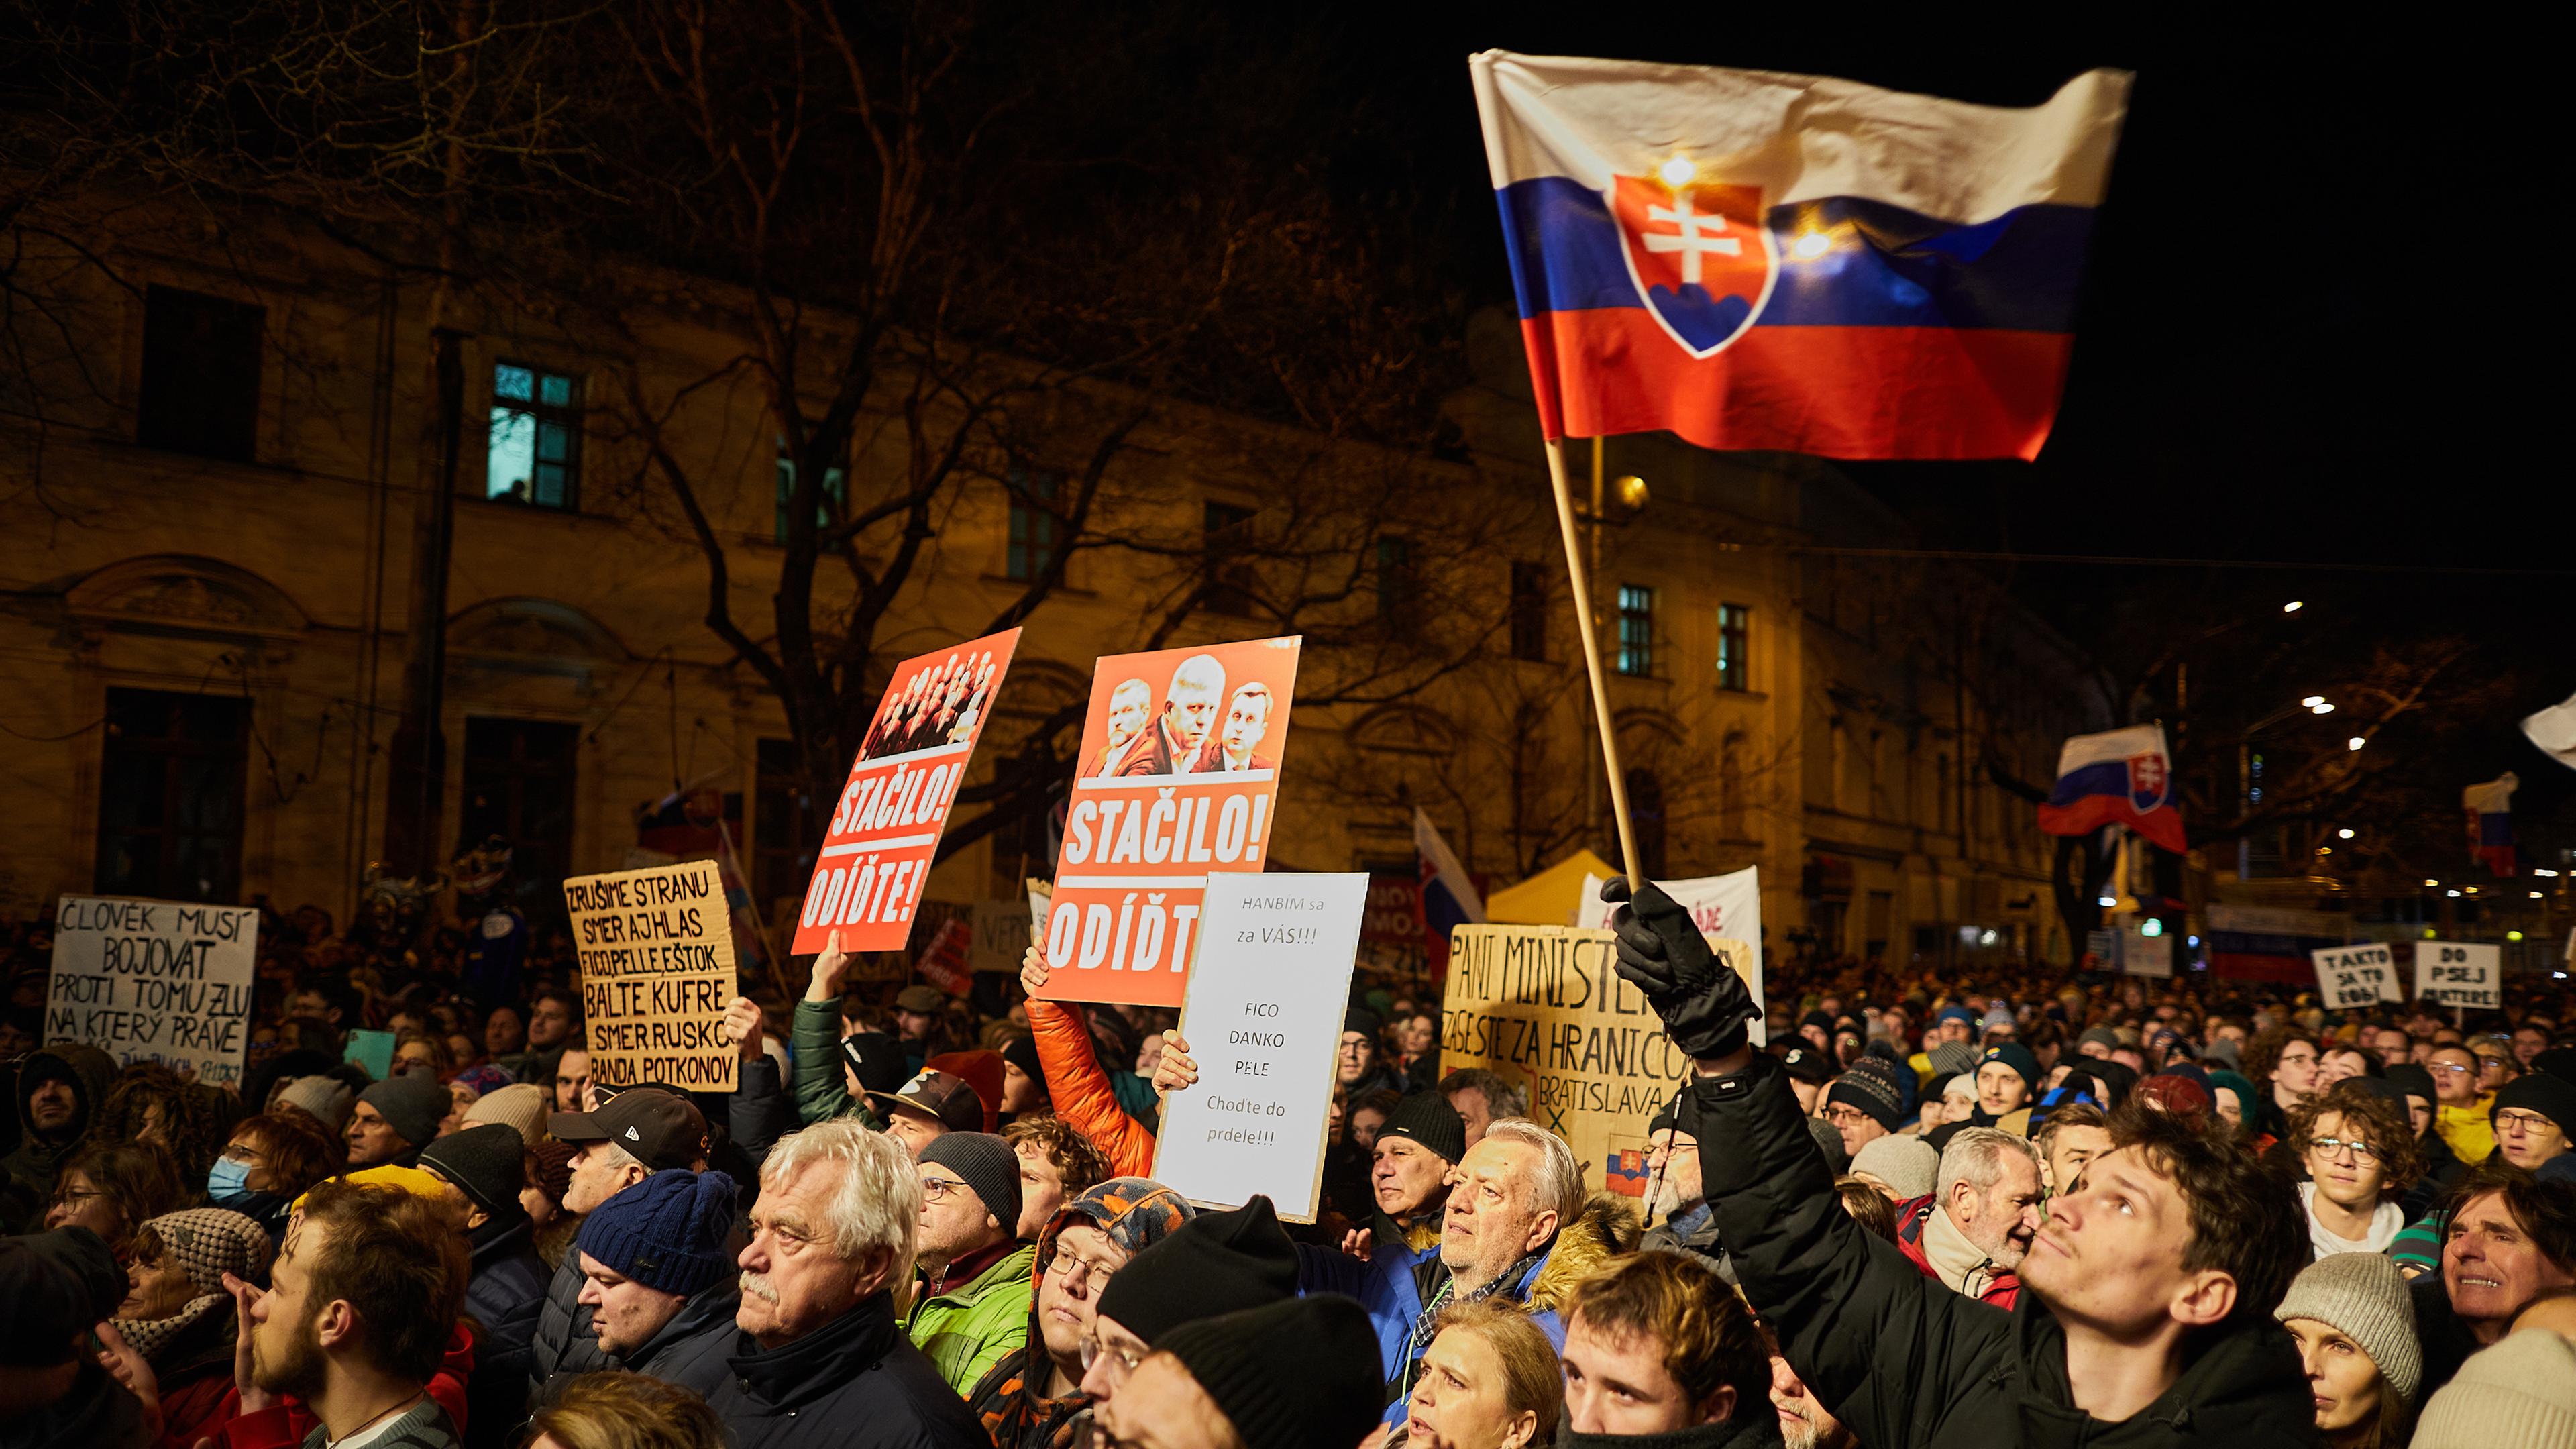 Menschen versammeln sich für eine Demonstration in Bratislava gegen die Regierung in der Slowakei. Man sieht eine Person mit slowakischer Flagge.